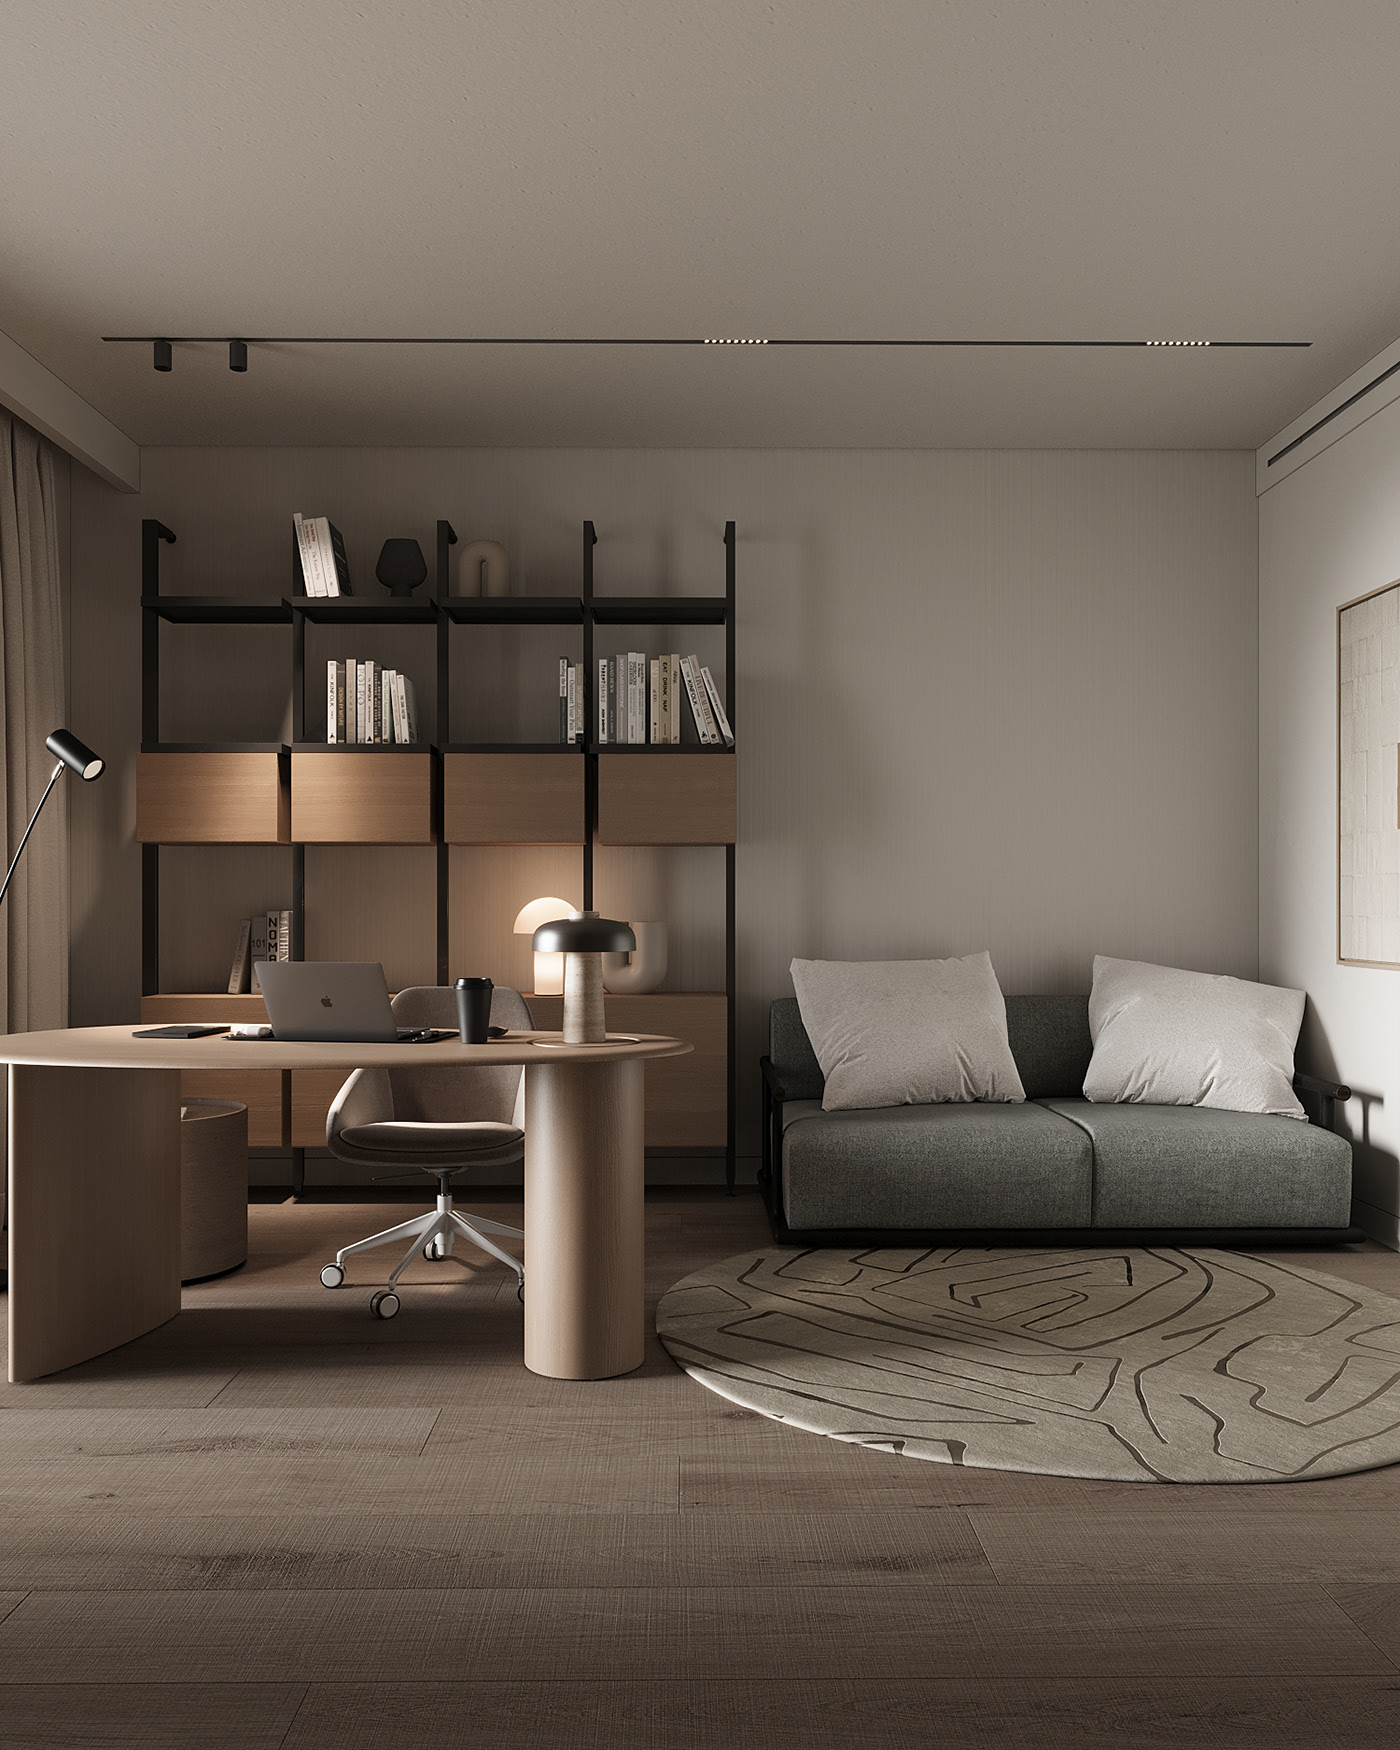 oficce room minimalism